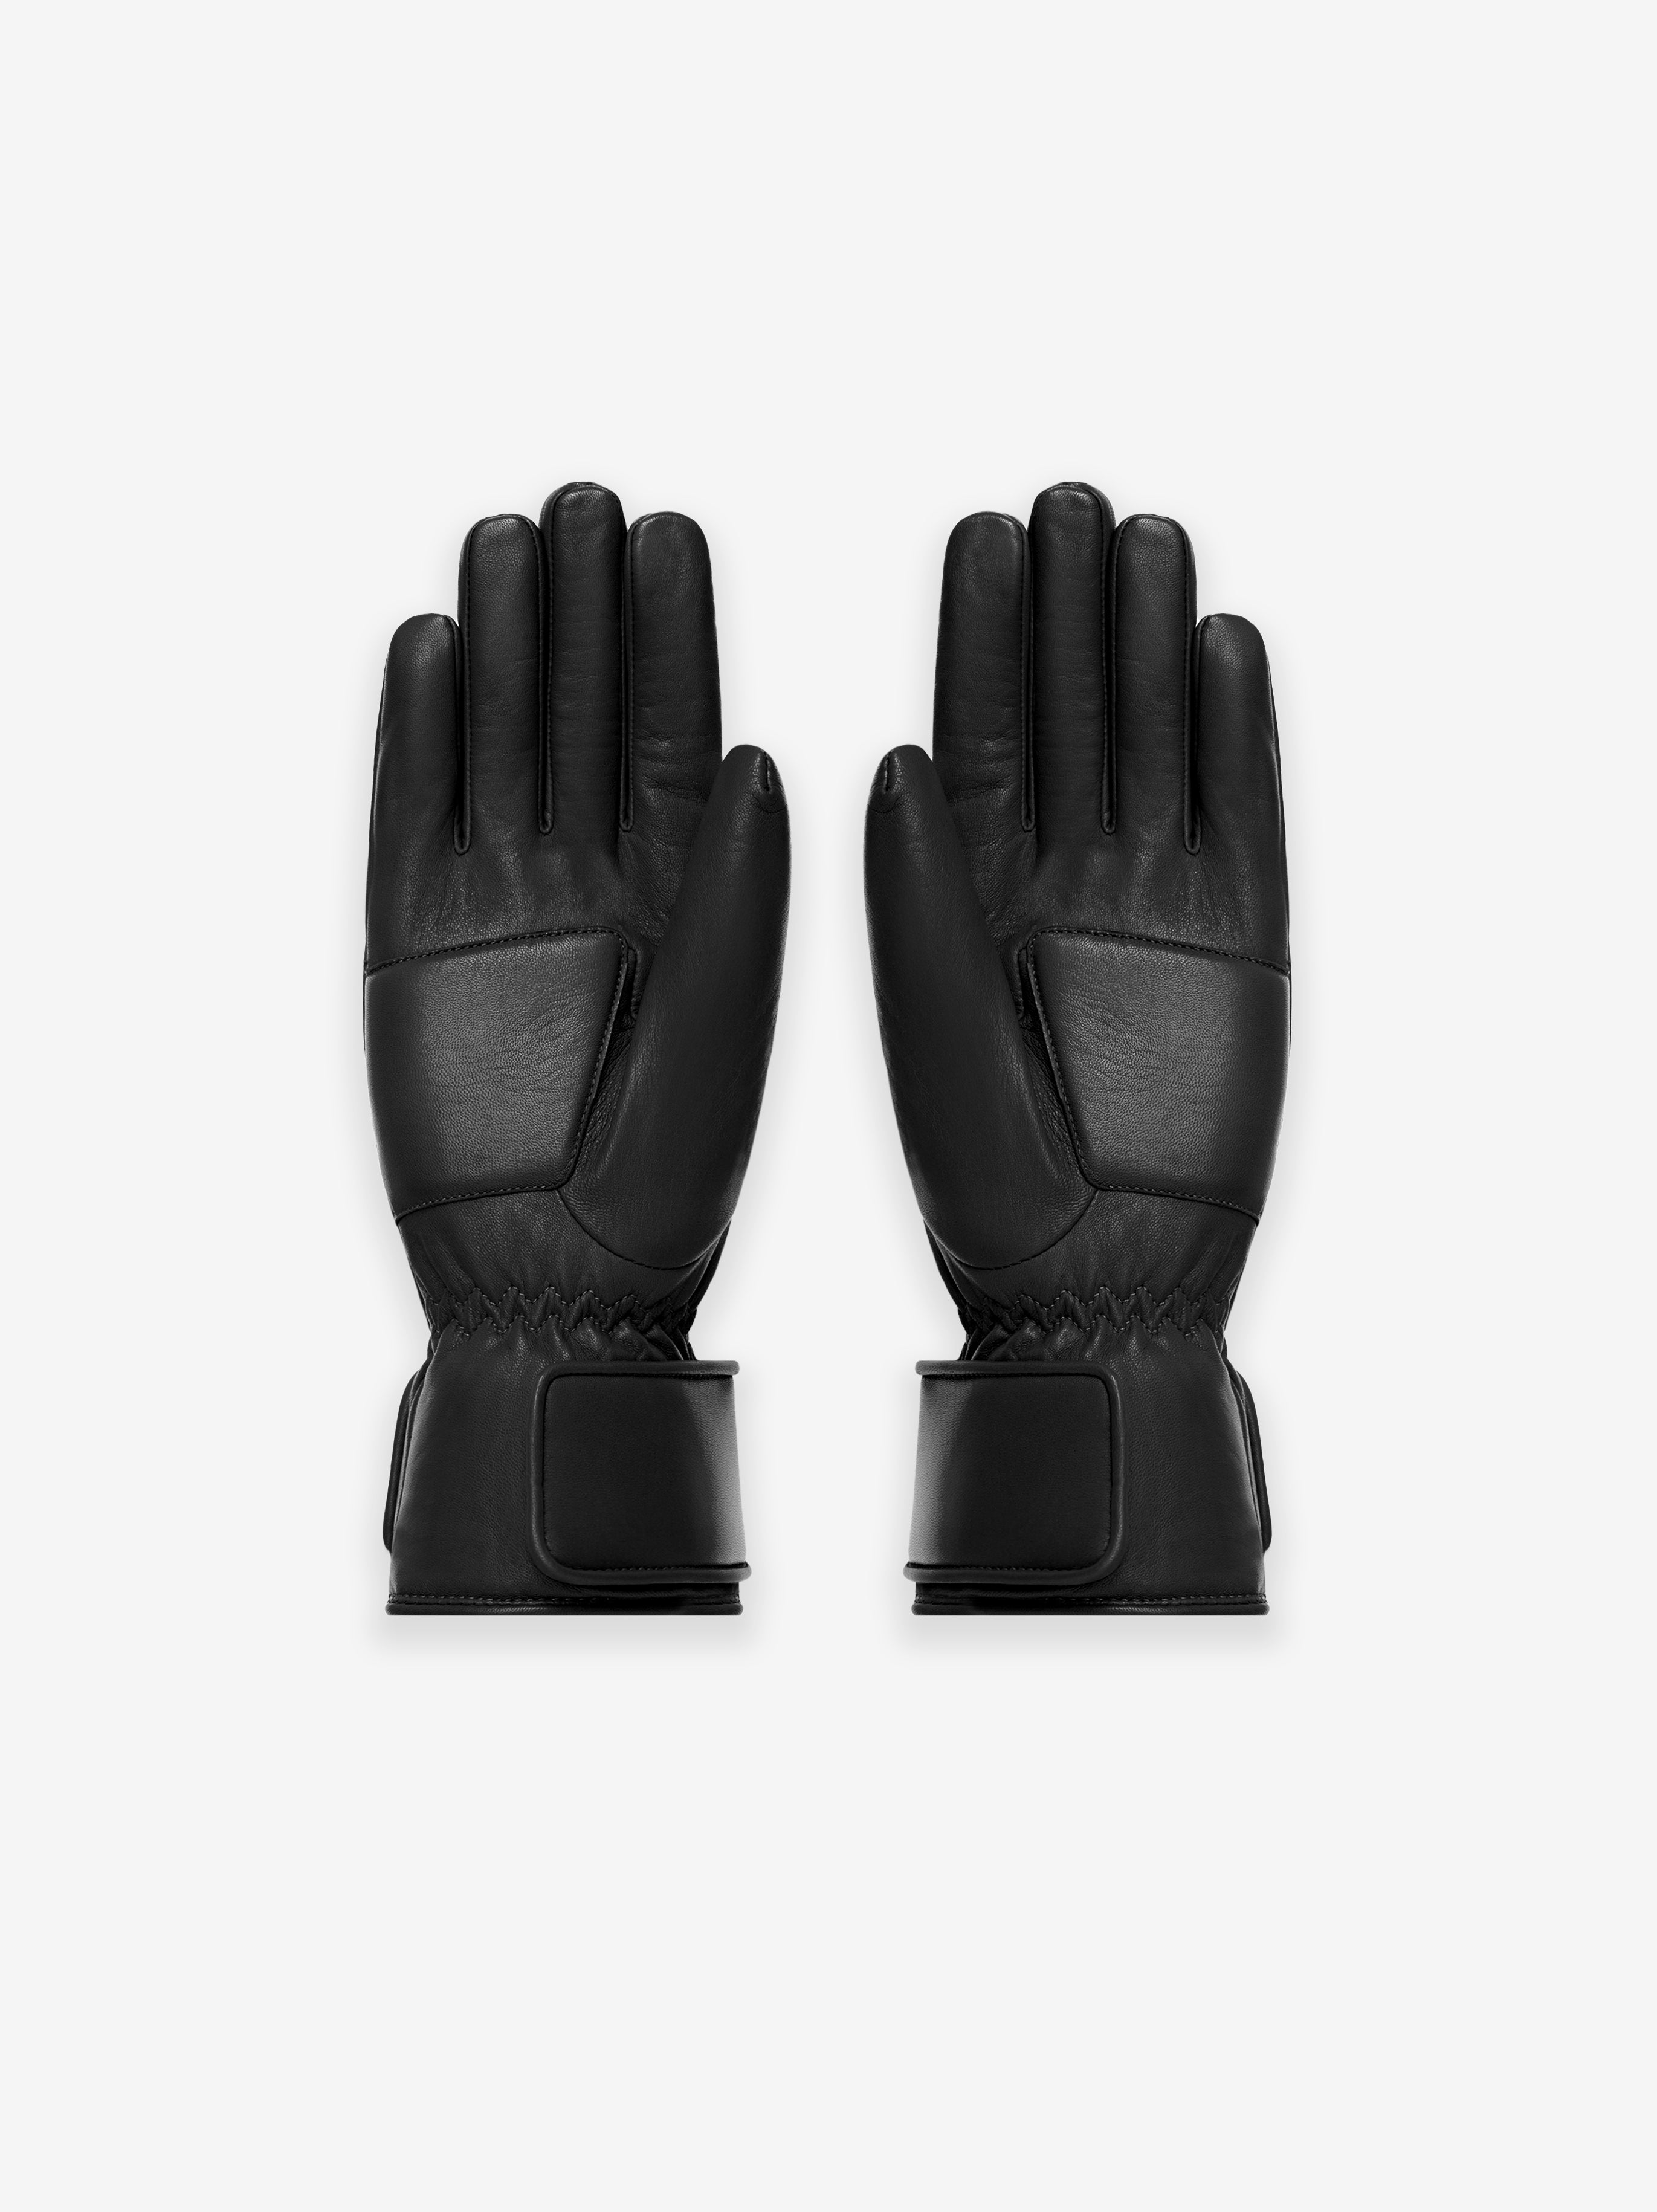 Wolf - Xk-1l Kevlar Casting Glove - Black